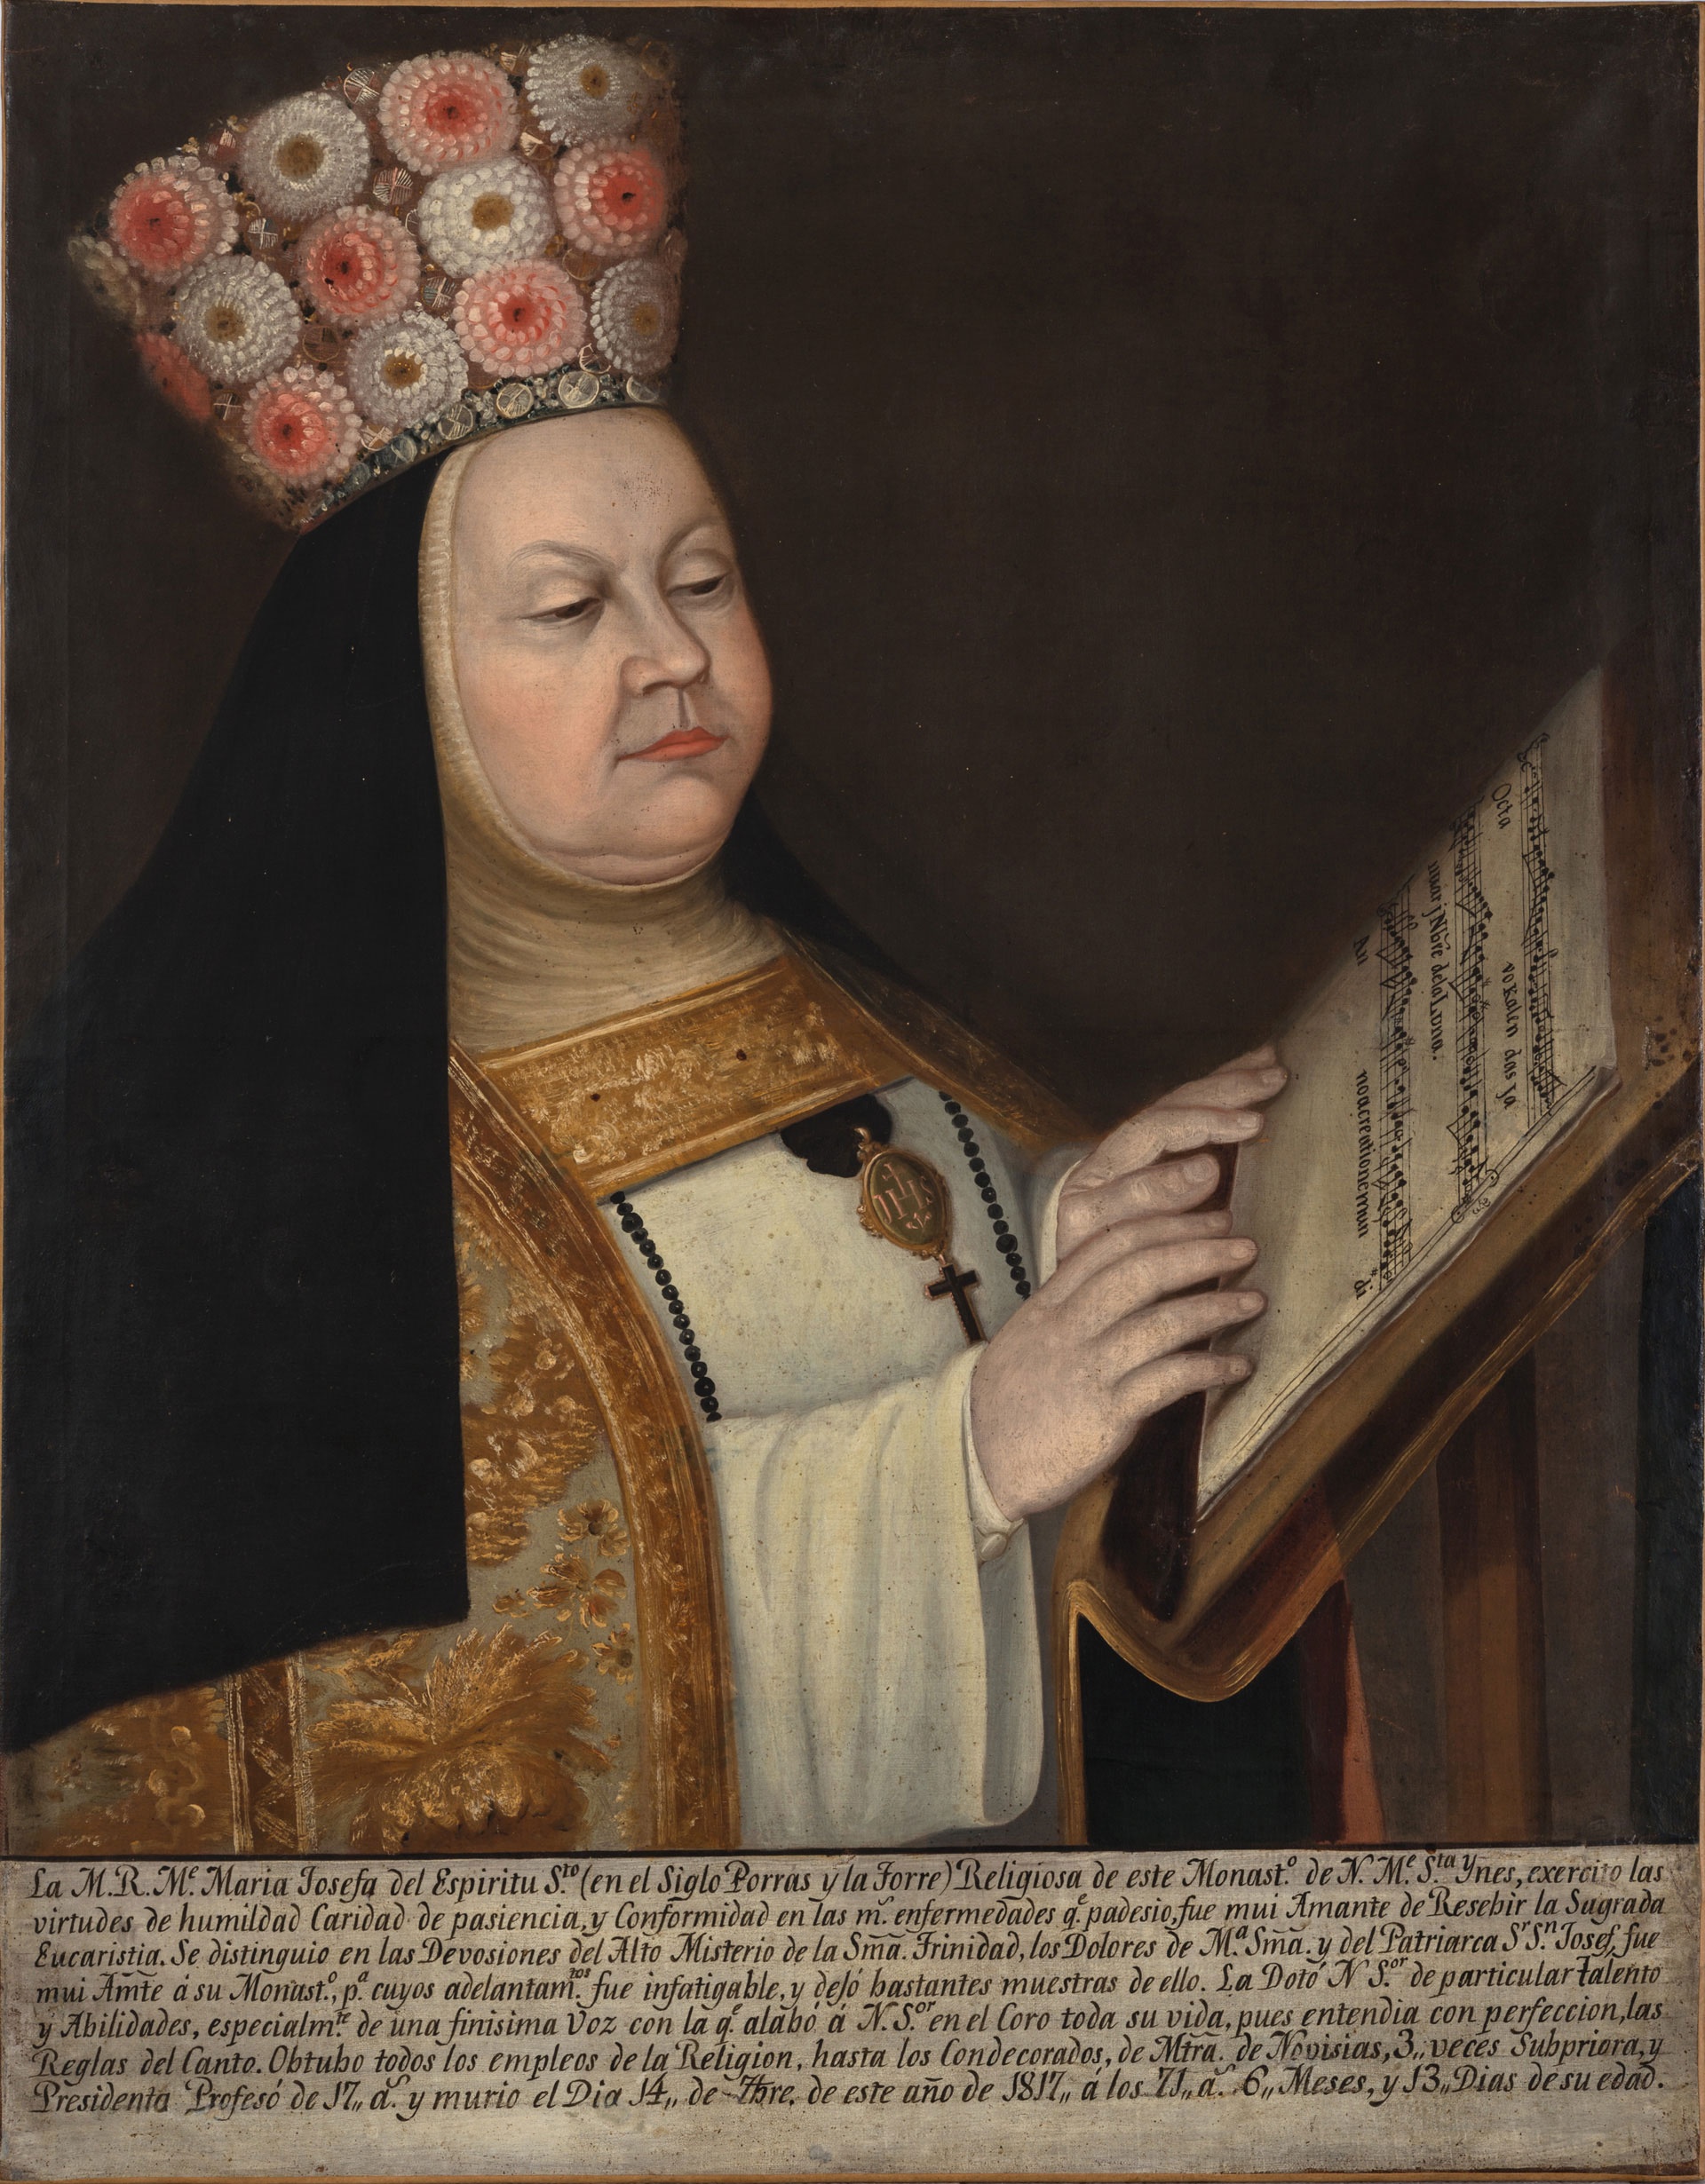 Sor María Josefa del Espíritu Santo